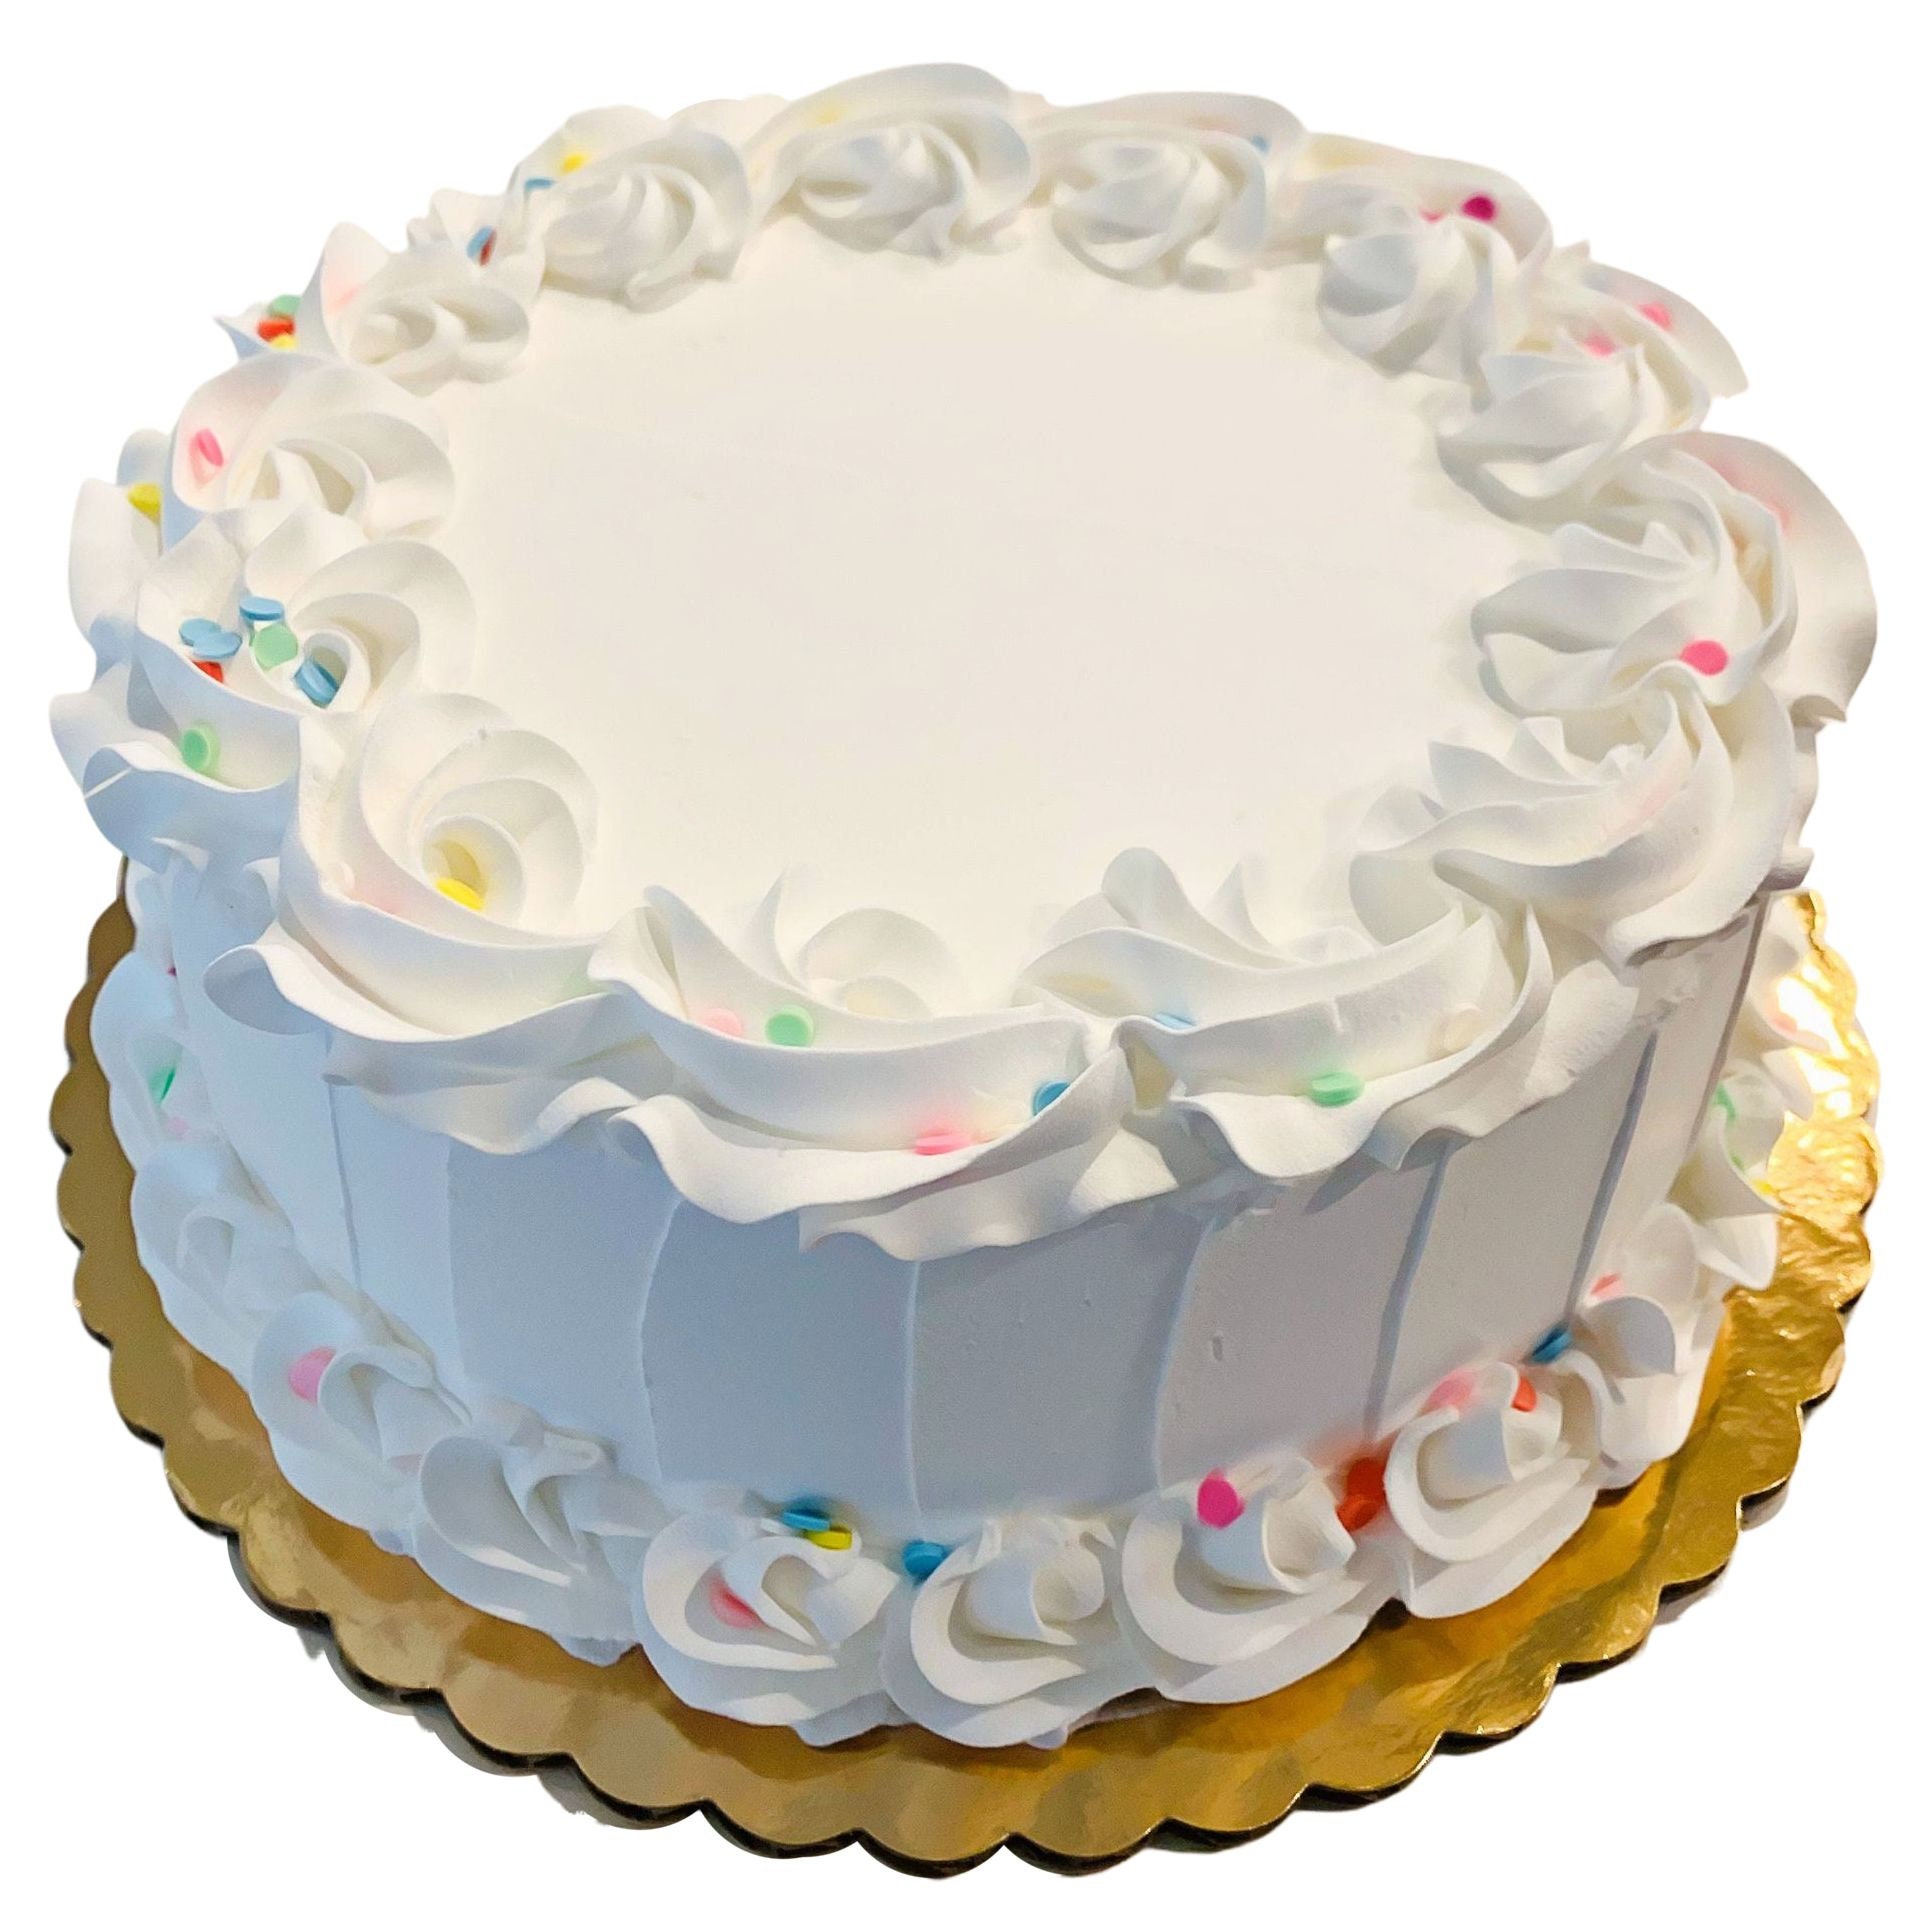 Bing Cake Topper - Dummy Cake - Fake Cake on Polystyrene - Bing Theme